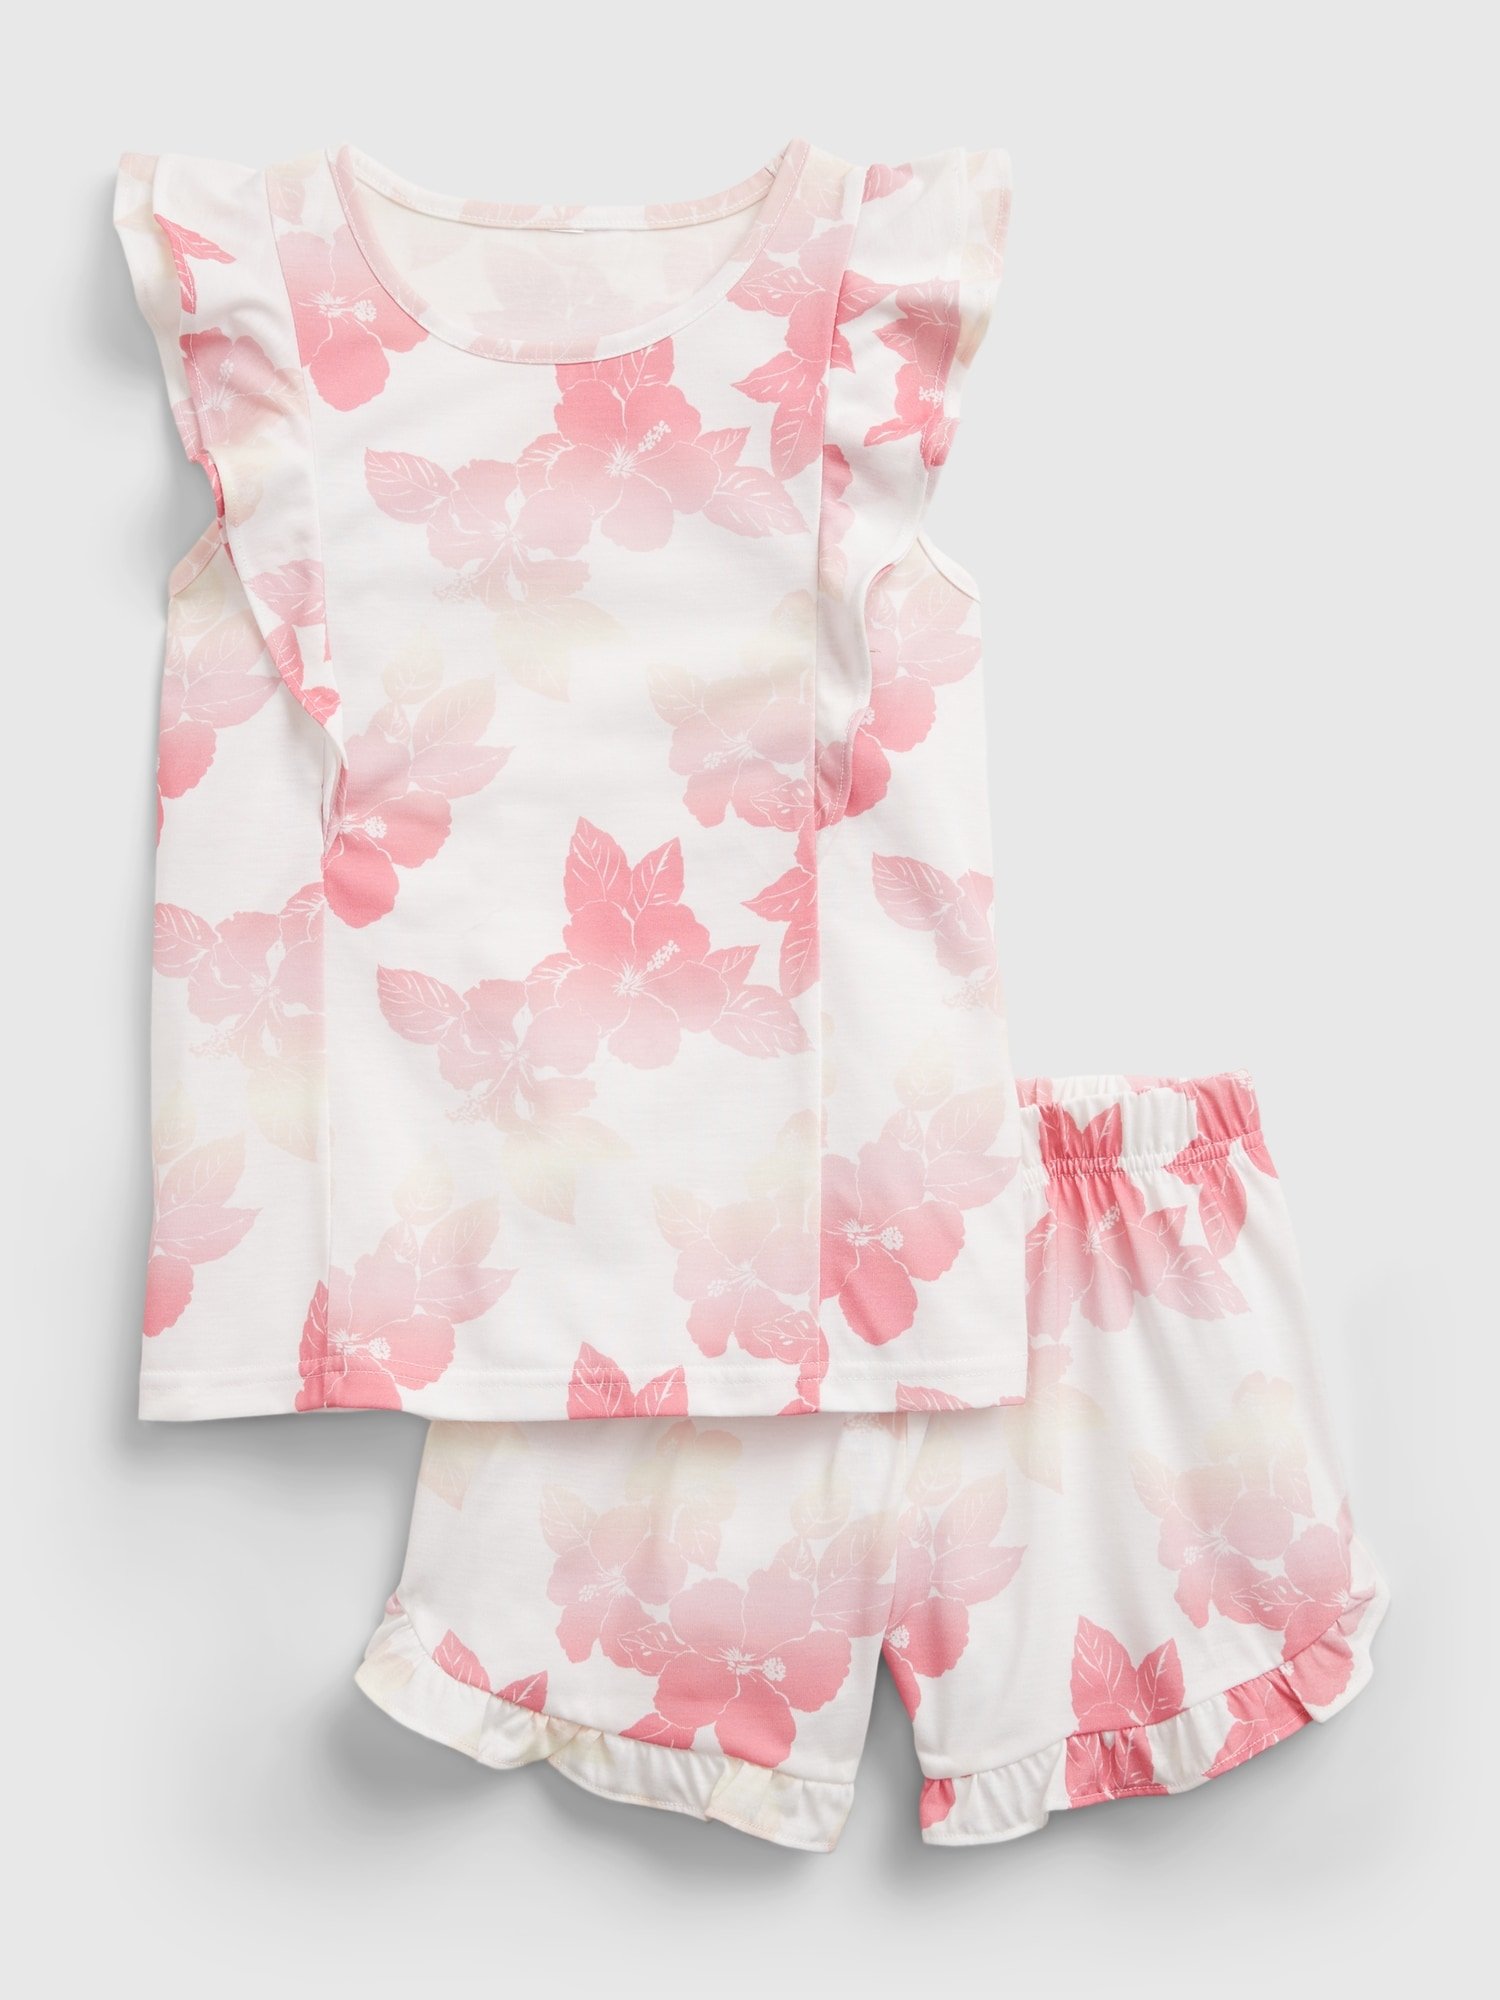 Fotografie Bílé holčičí dětské pyžamo 100% recycled floral flutter pj set